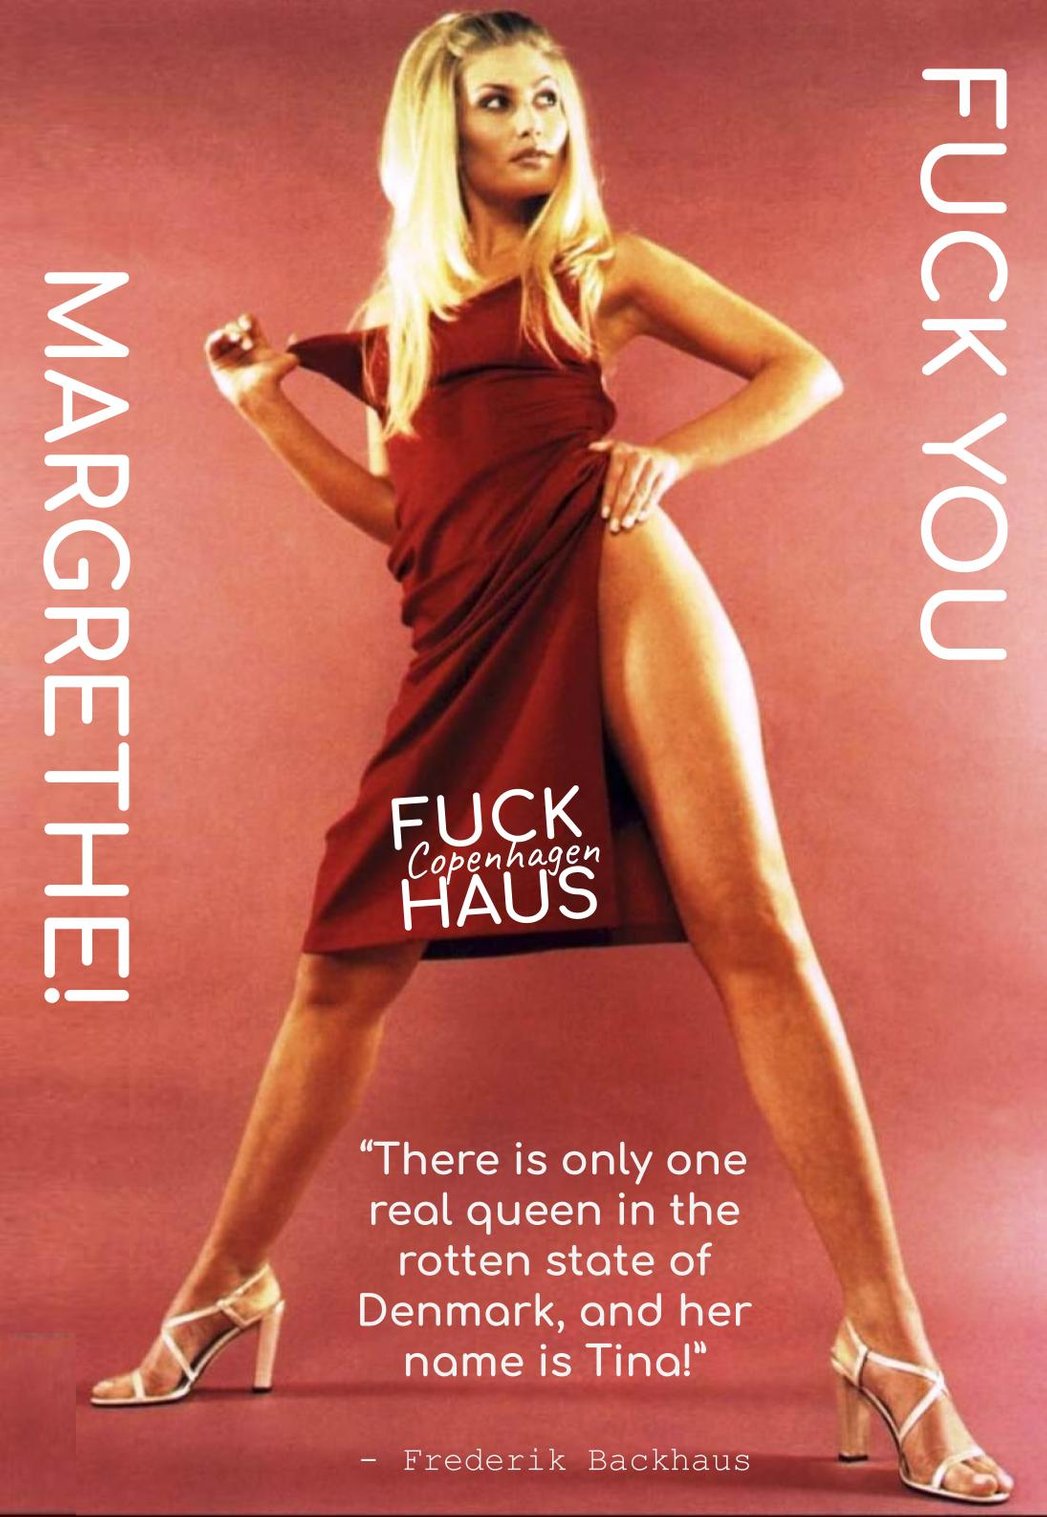 "Fuck you Margrethe" by Frederik Backhaus